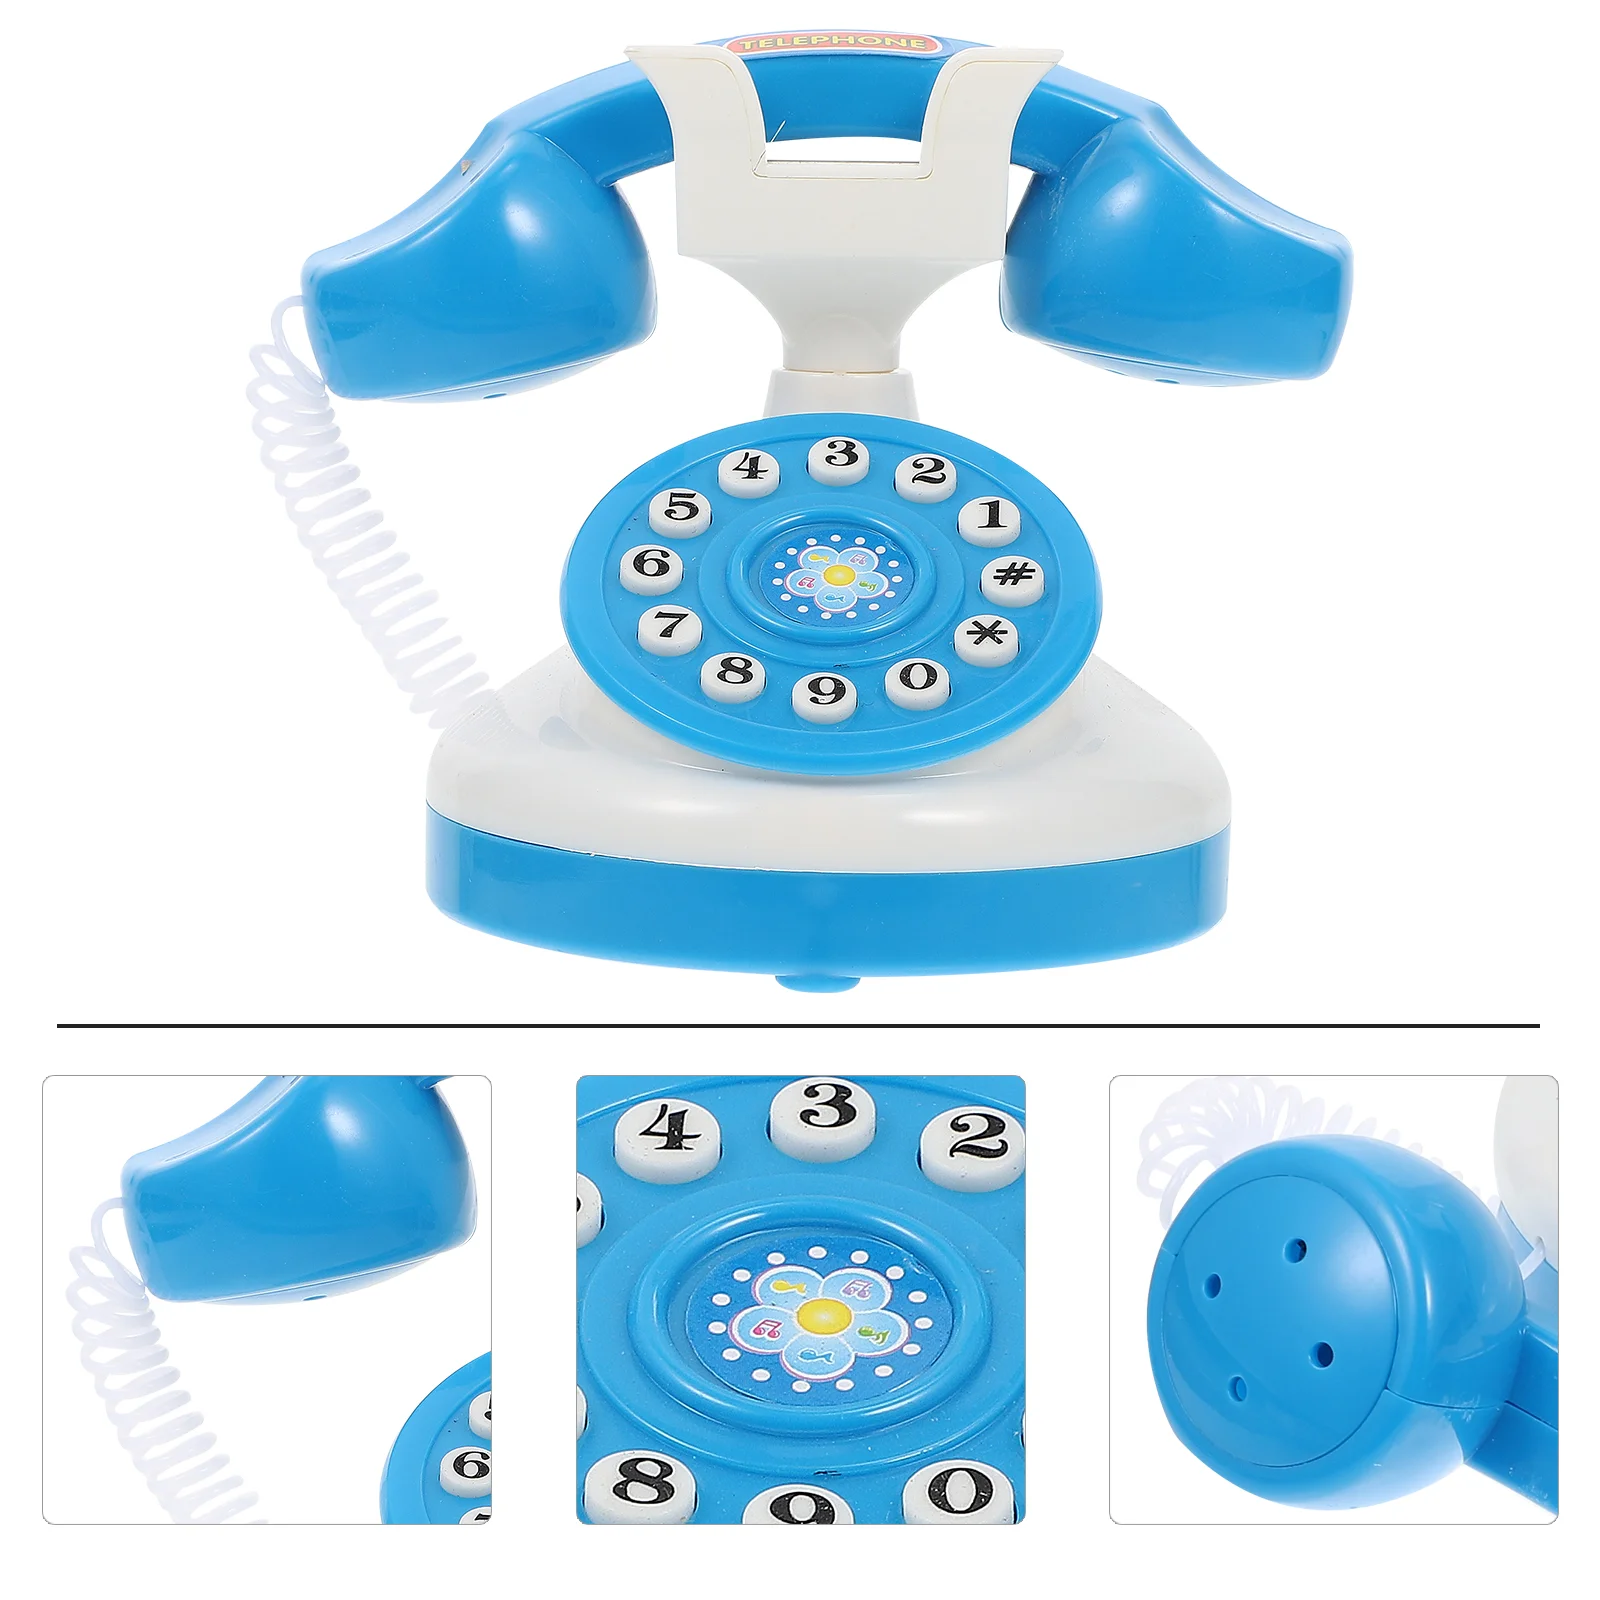 

Simulated Phone Mini Toys Kids Telephone Shape Intelligence Plaything Interactive Role Fake Plastic Educational Child